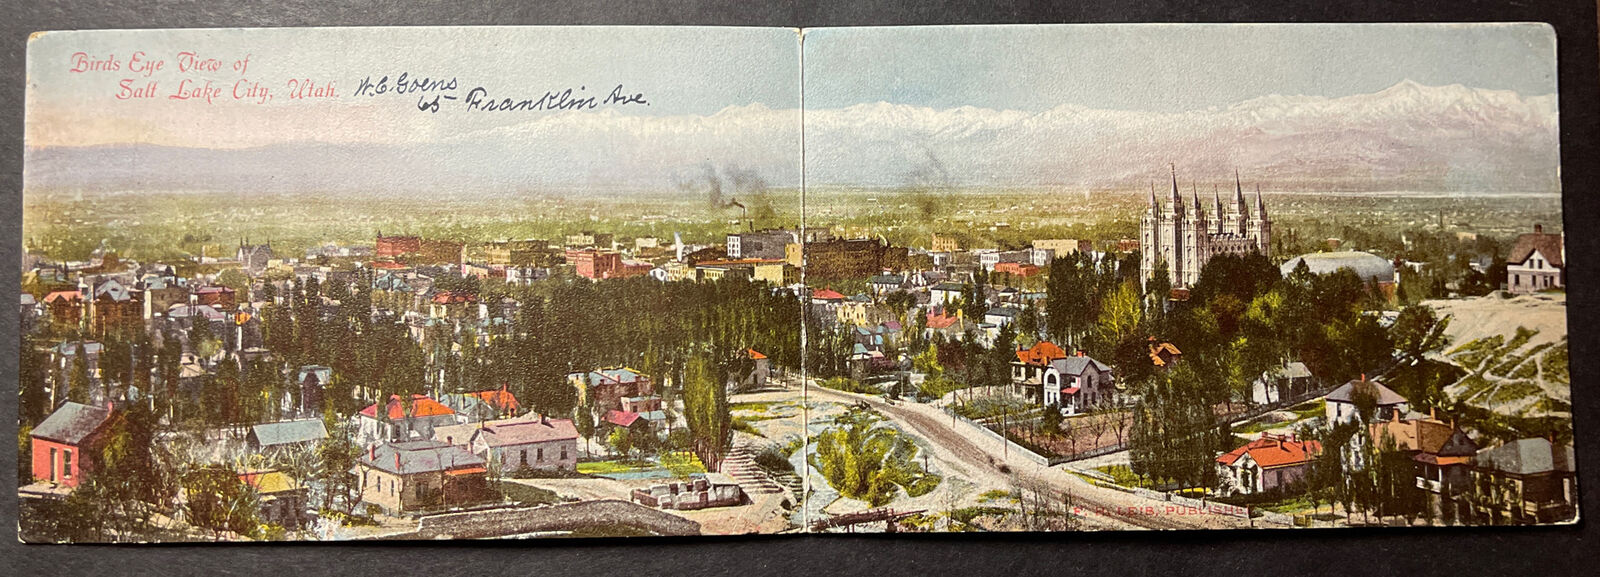 Bird's Eye View of Salt Lake City UTAH double-wide printed 1906 